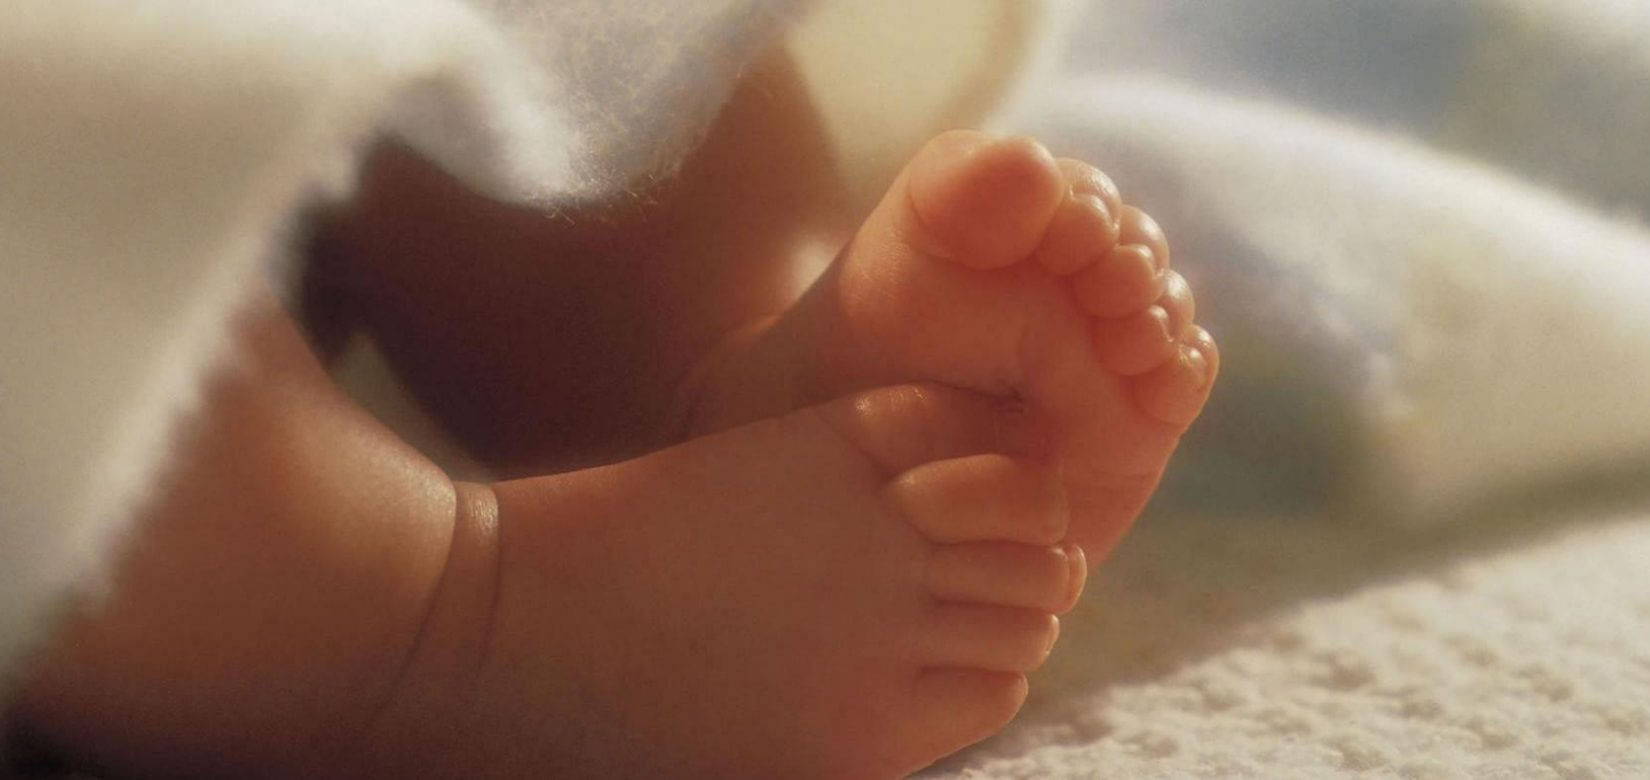 Σωστή ανάπτυξη μωρού: Mύθοι & αλήθειες